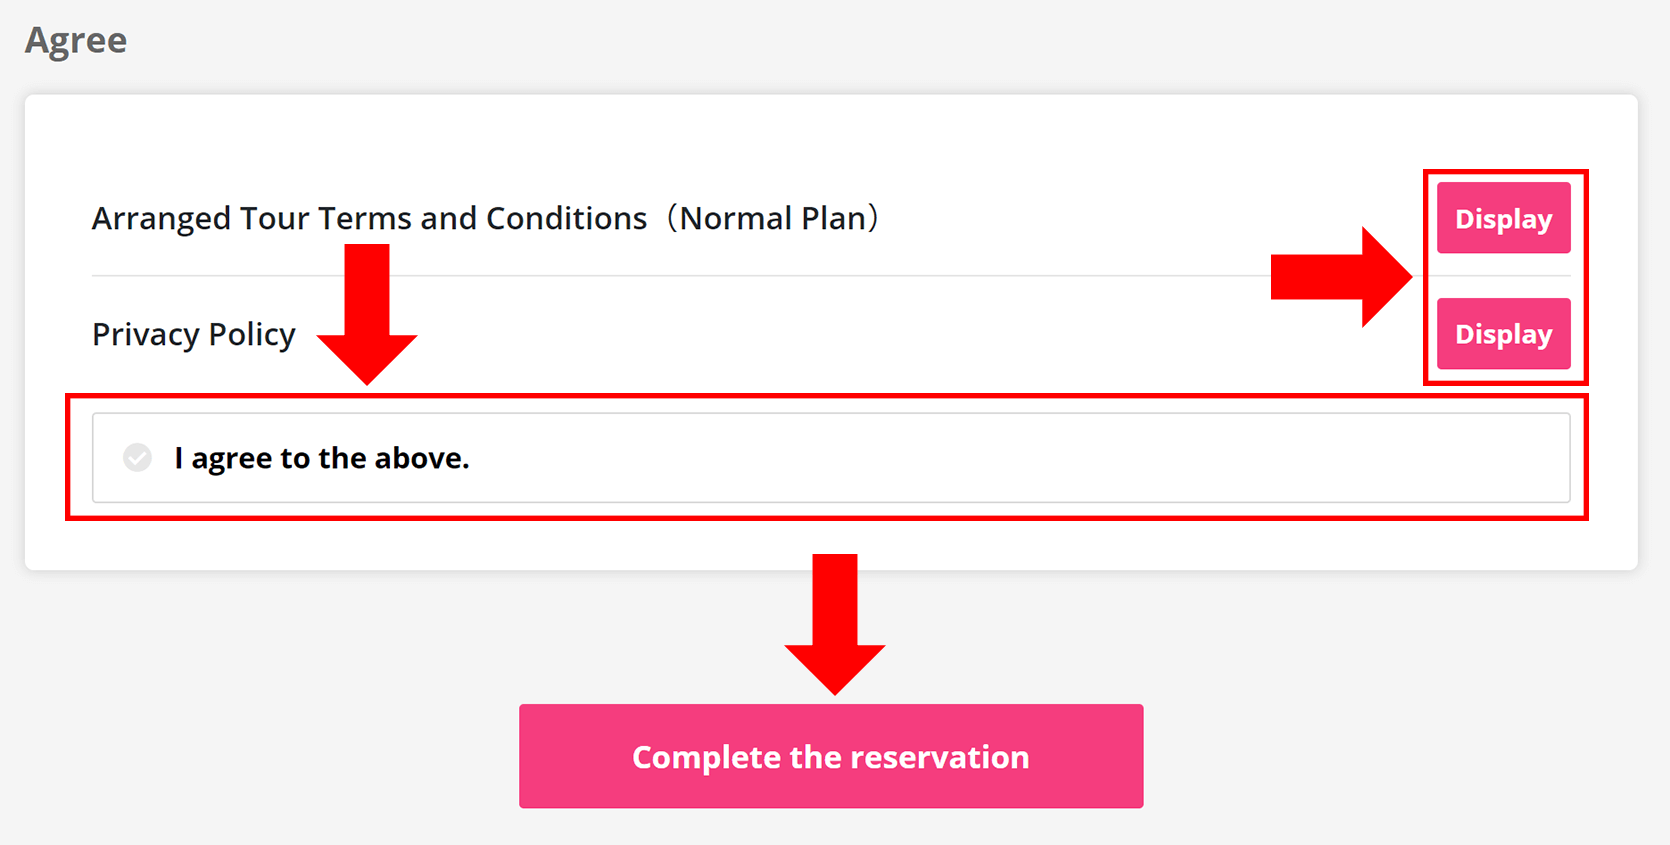 Xác nhận tất cả thông tin đã đăng ký và đọc 'Điều khoản và điều kiện' và 'Chính sách Bảo mật'. Sau đó, chọn vào mục 'I agree to the above' và nhấp vào nút 'Complete the reservation'.